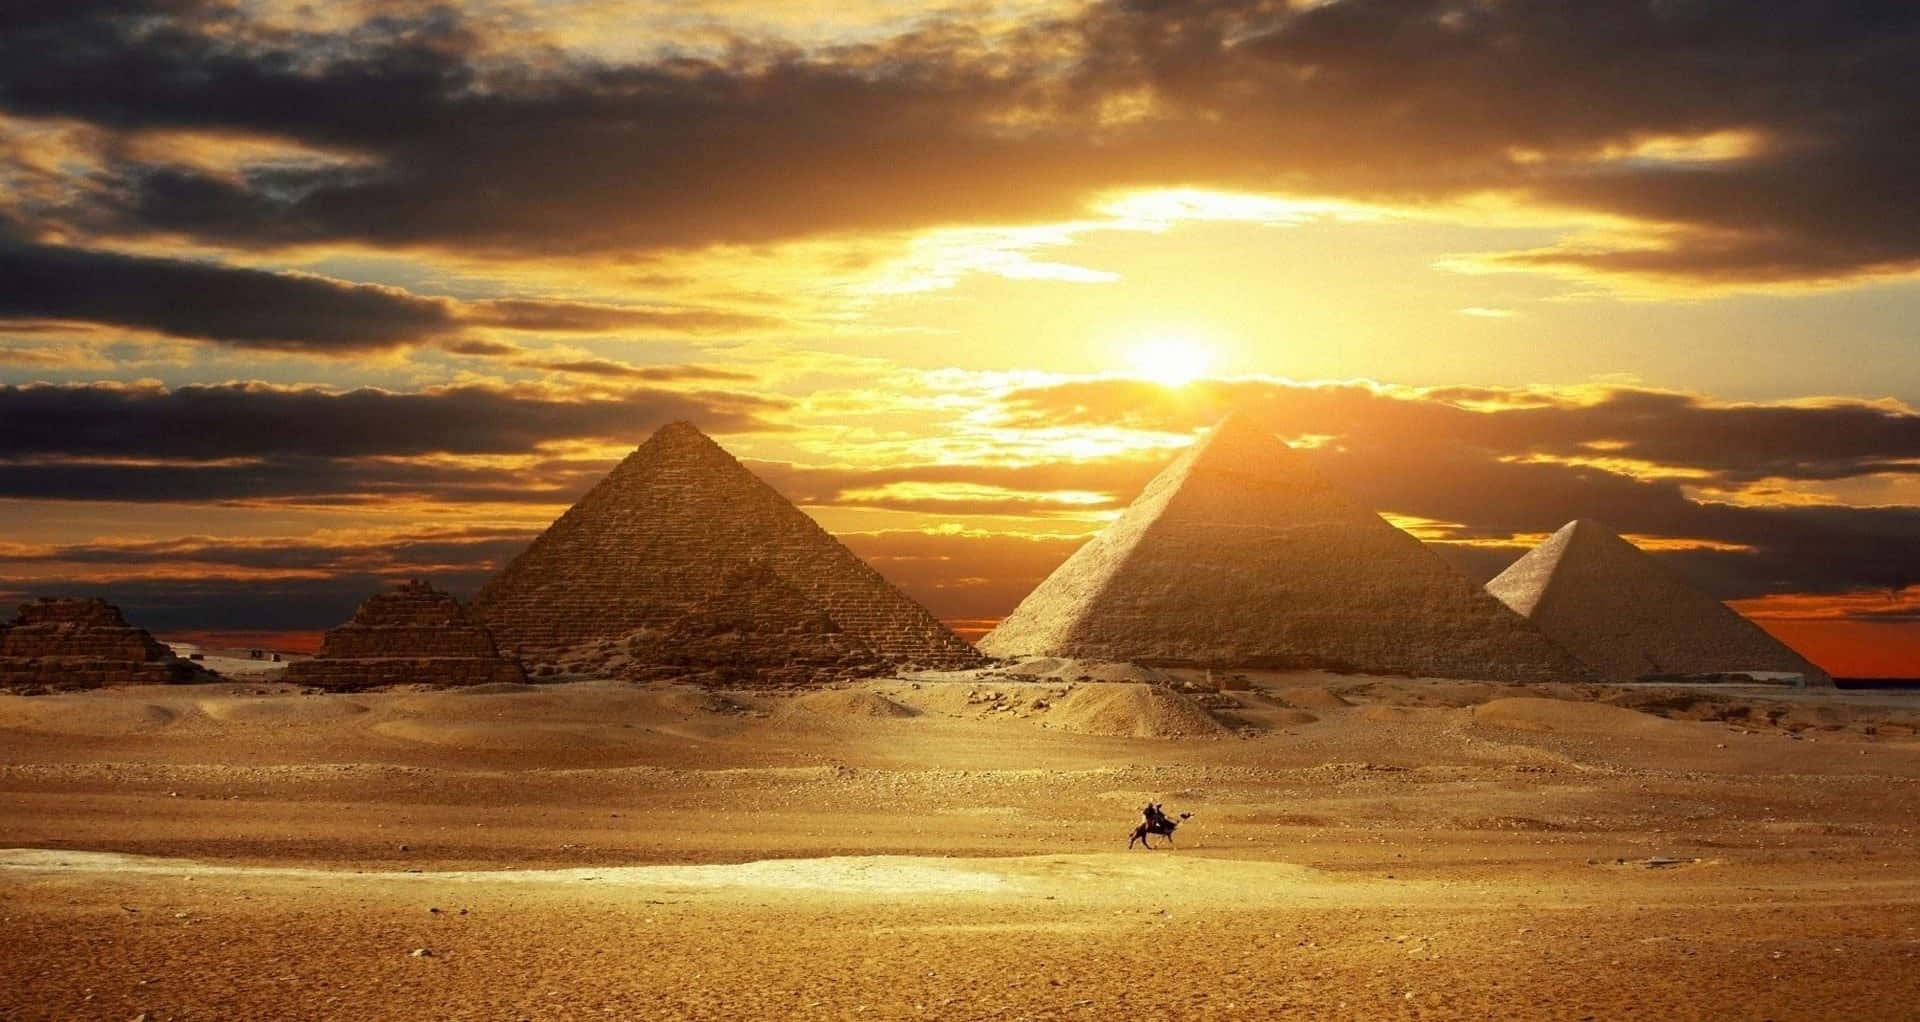 Scorciomozzafiato Delle Grandi Piramidi Di Giza Con La Sfinge In Egitto.